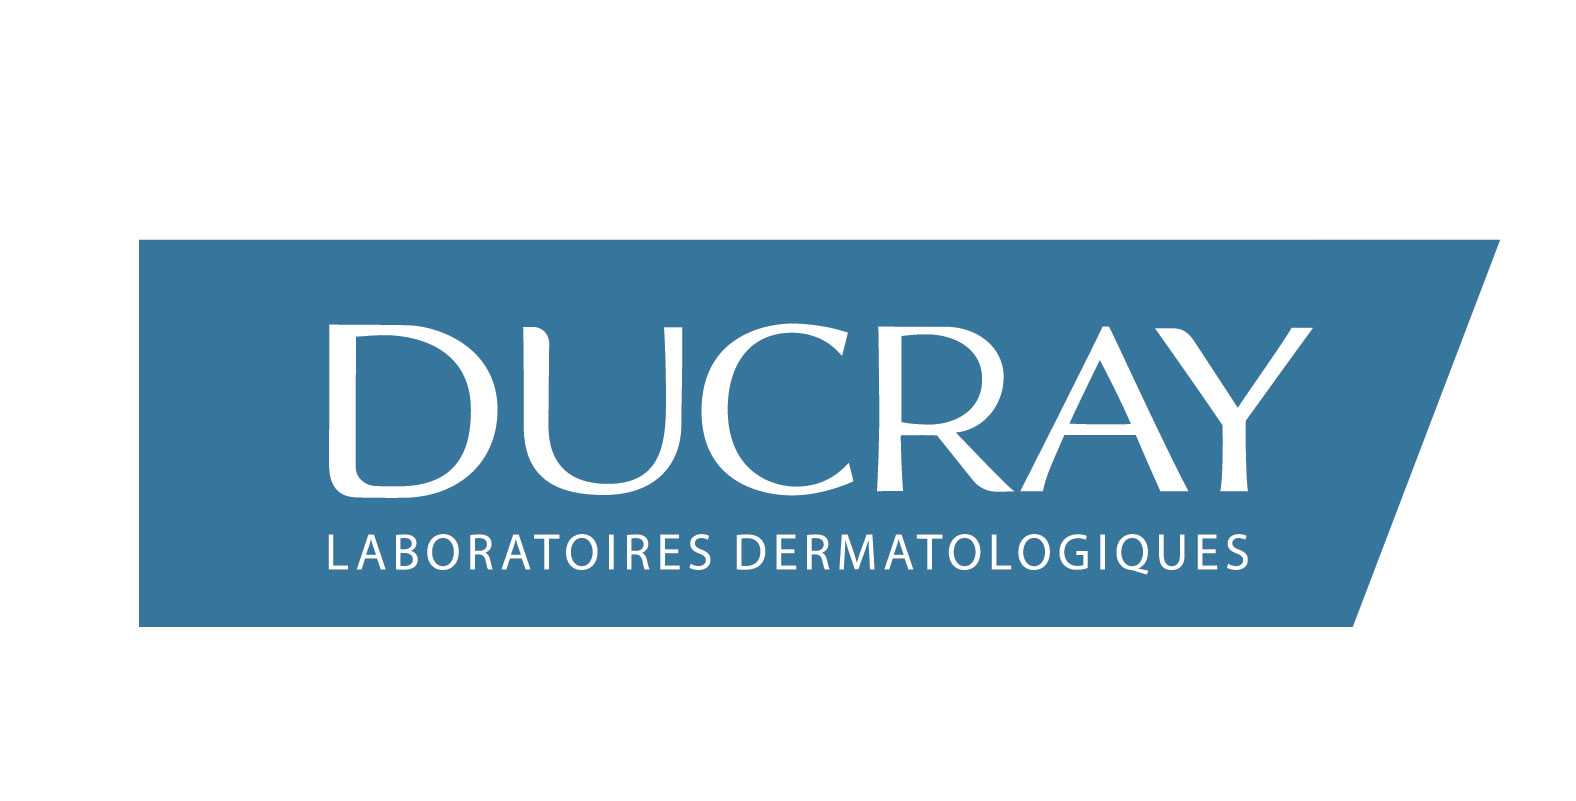 العلامة التجارية: Ducray